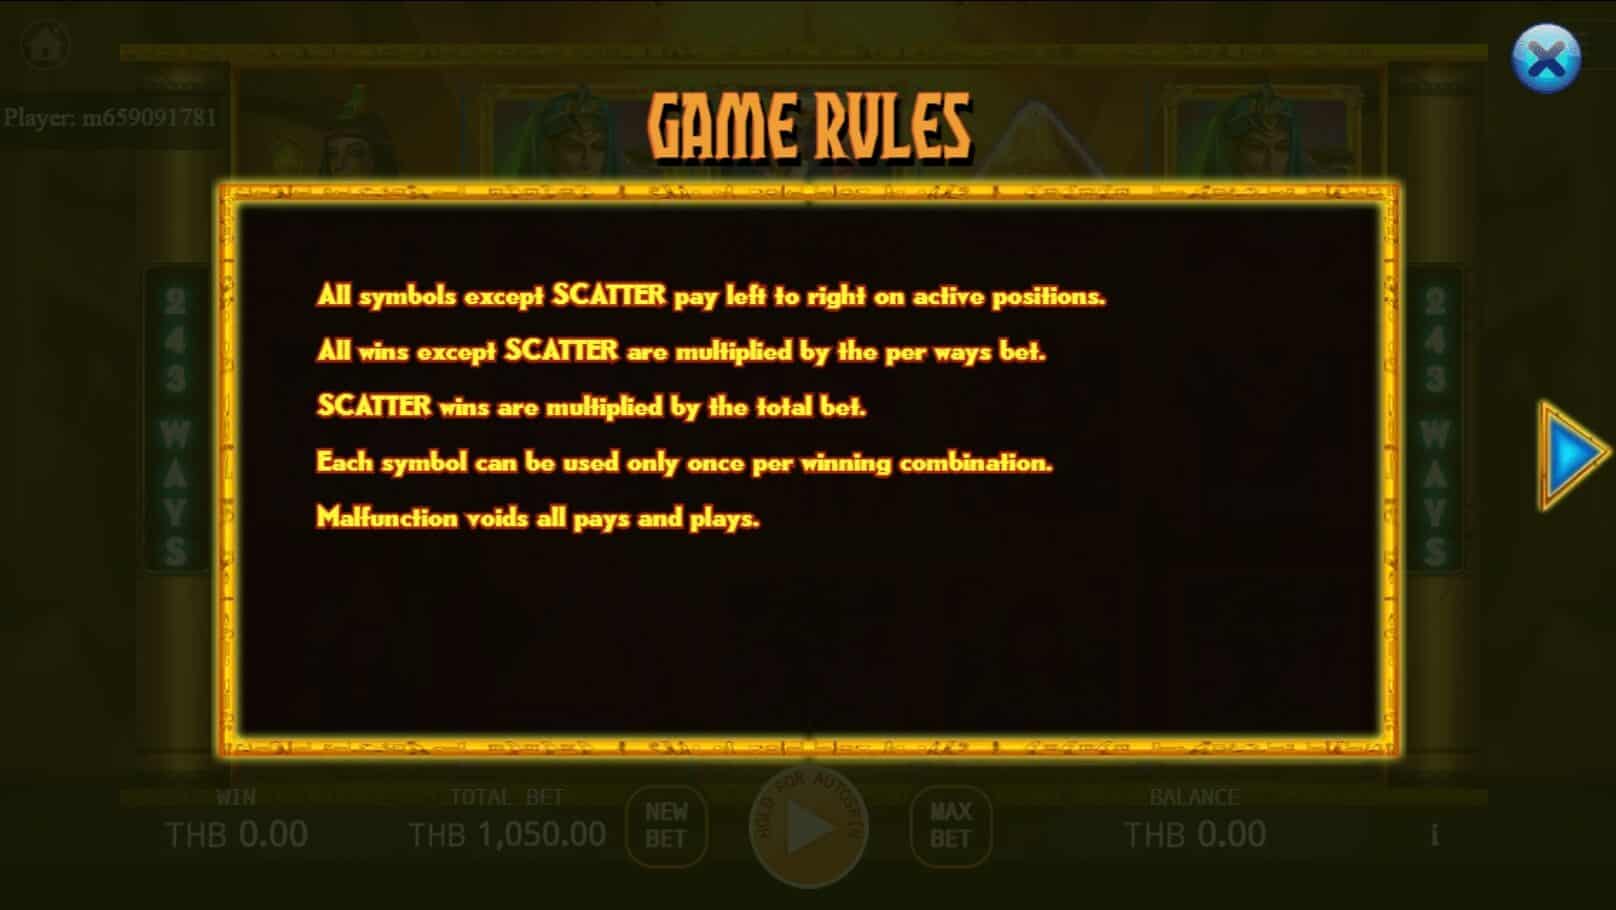 Egyptian Mythology สล็อต เว็บตรง ไม่ผ่านเอเย่นต์ ค่าย KA Gaming joker ฝาก 1 บาท ได้ 100